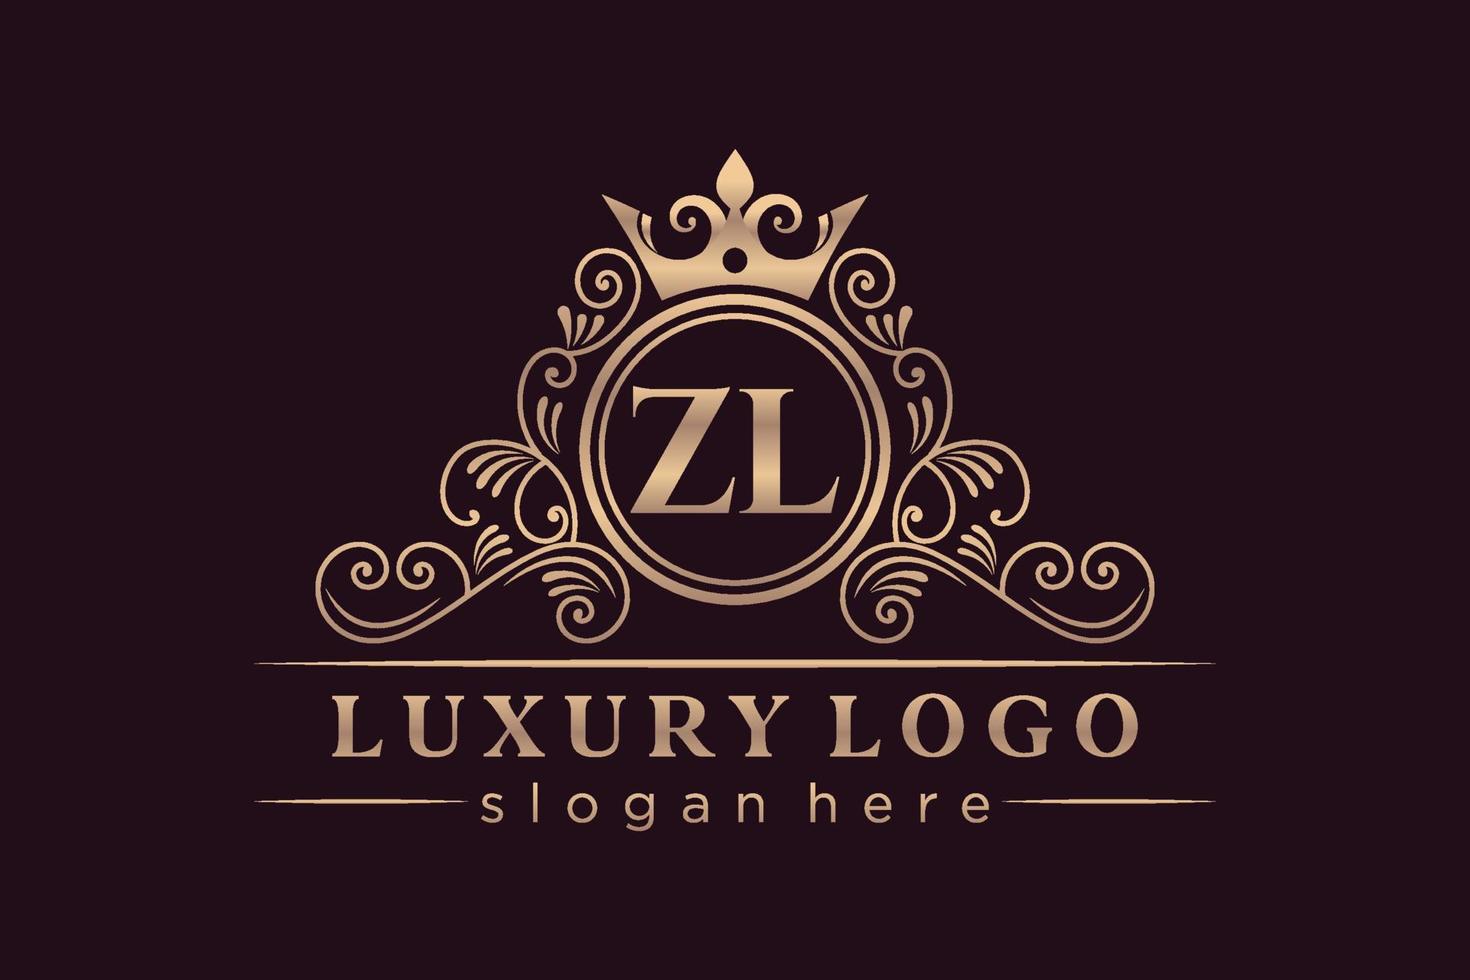 zl letra inicial oro caligráfico femenino floral dibujado a mano monograma heráldico antiguo estilo vintage lujo diseño de logotipo vector premium